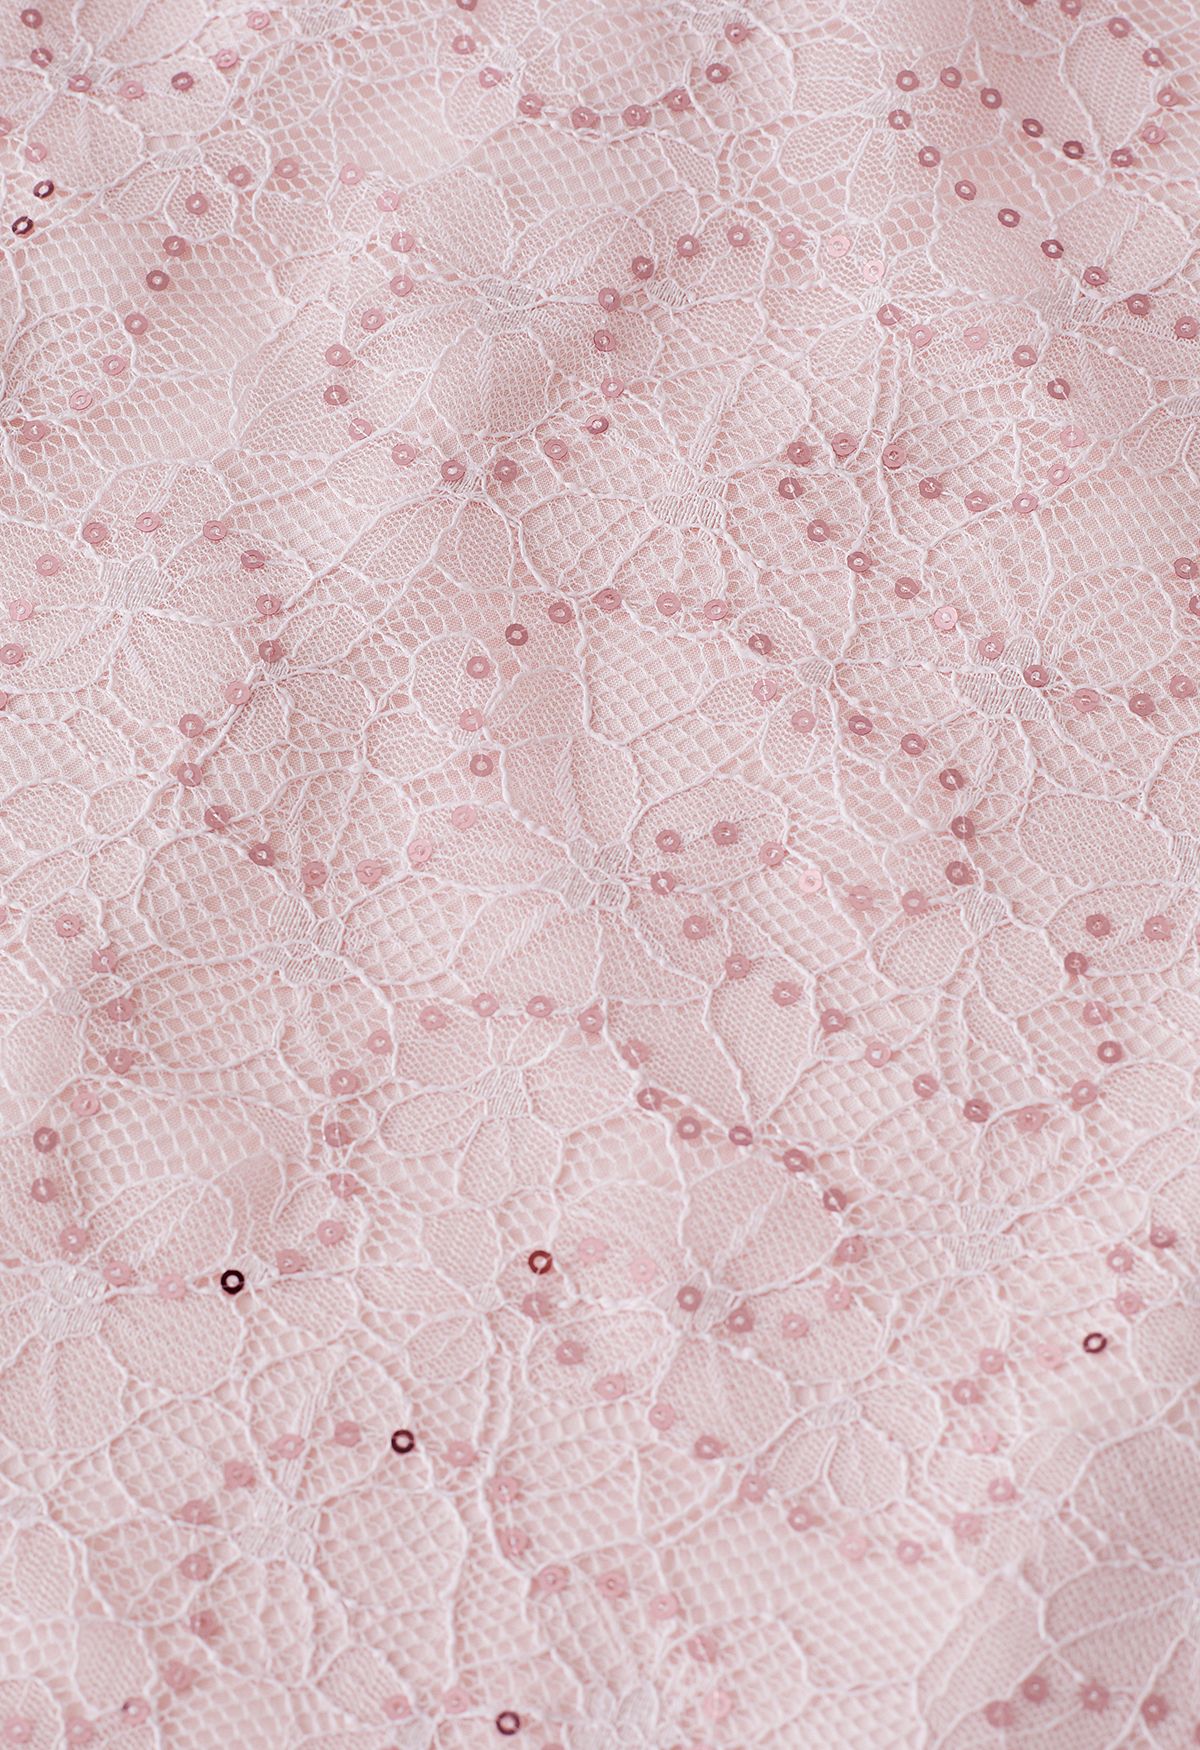 Falda de tul de malla de encaje floral con lentejuelas en rosa